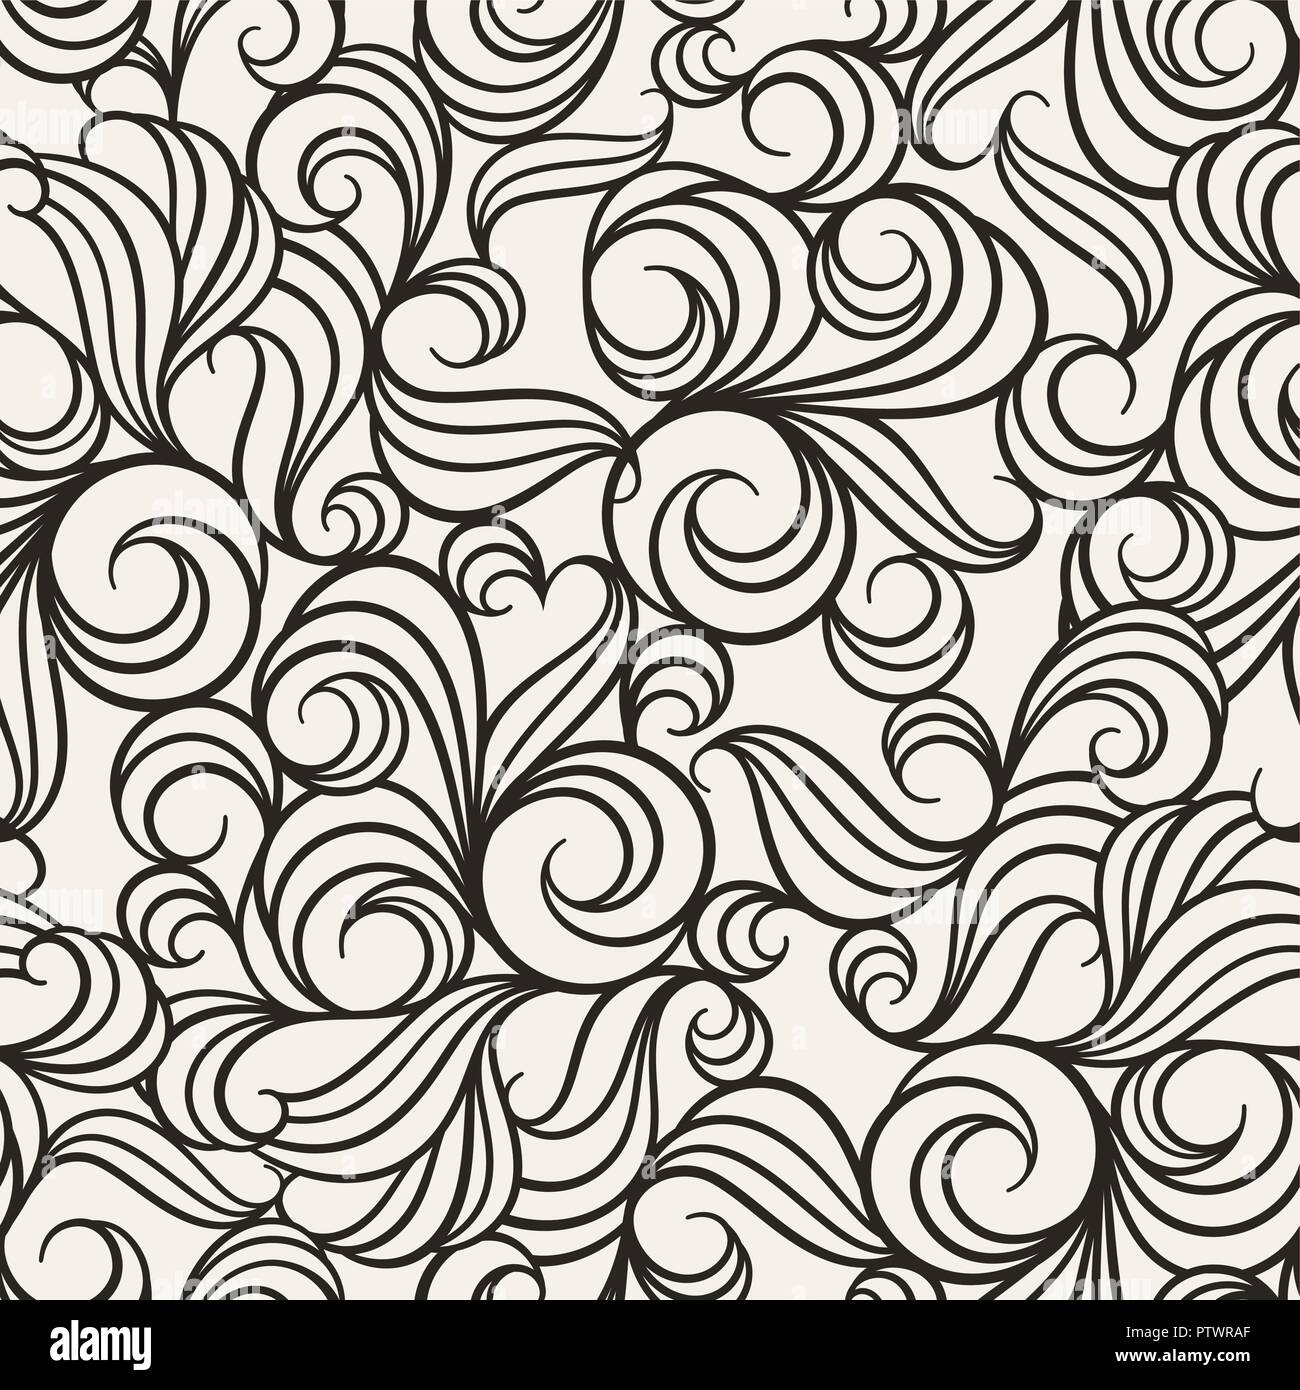 Illustrazione Vettoriale di seamless pattern con fiori astratti e ricci. Sfondo floreale per il vostro design Illustrazione Vettoriale